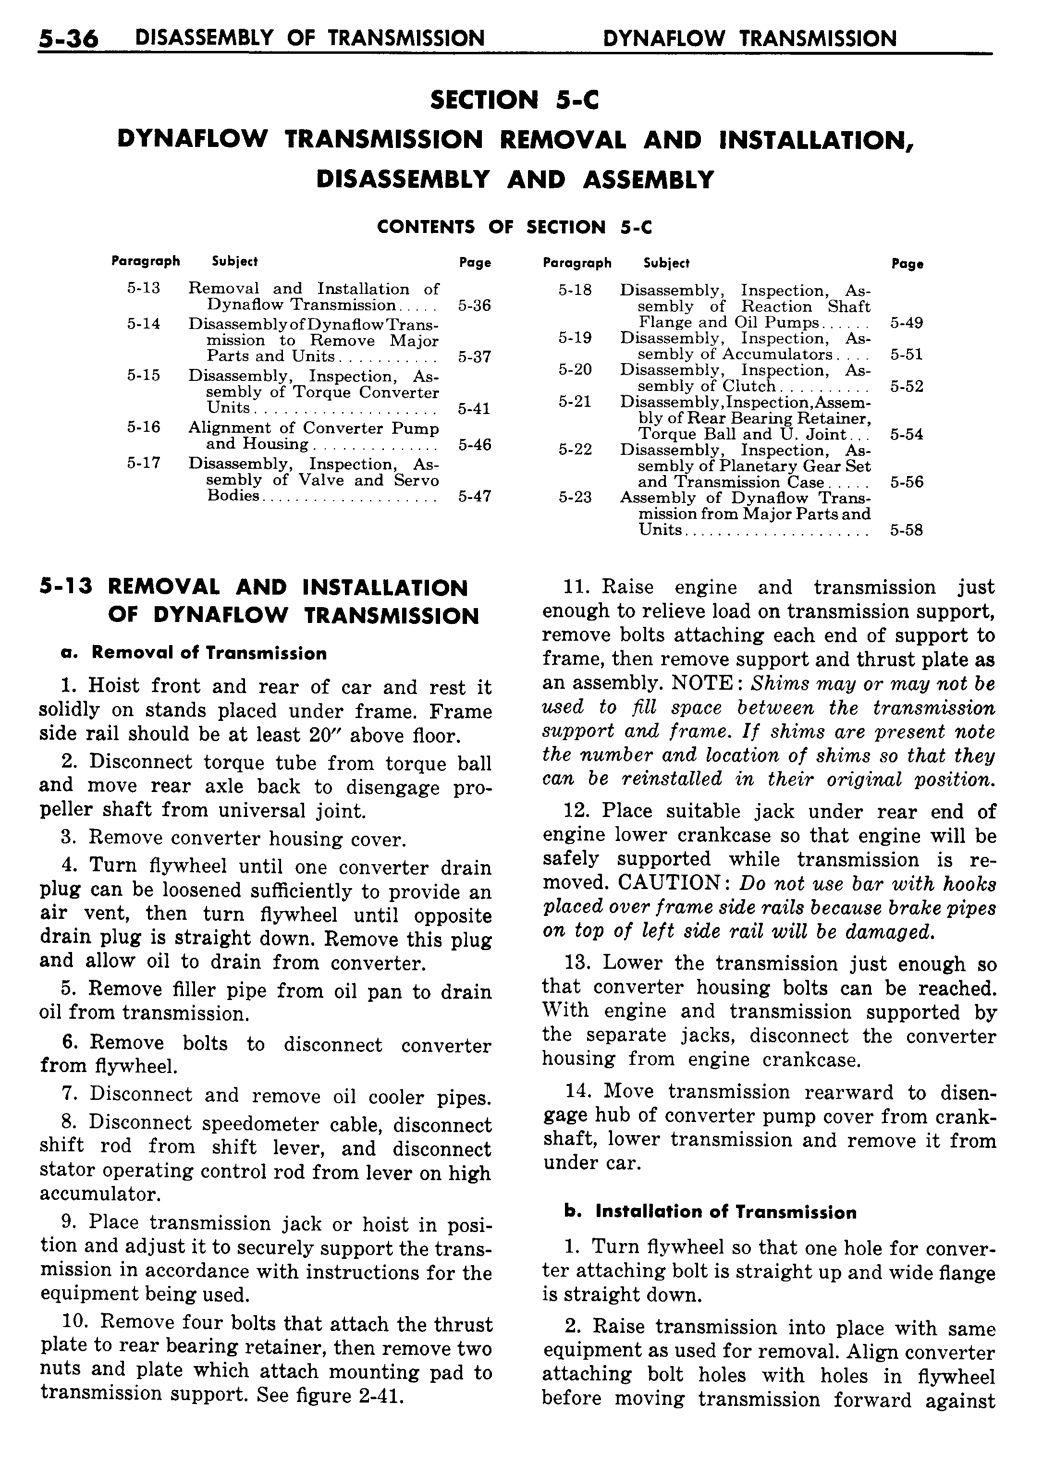 n_06 1957 Buick Shop Manual - Dynaflow-036-036.jpg